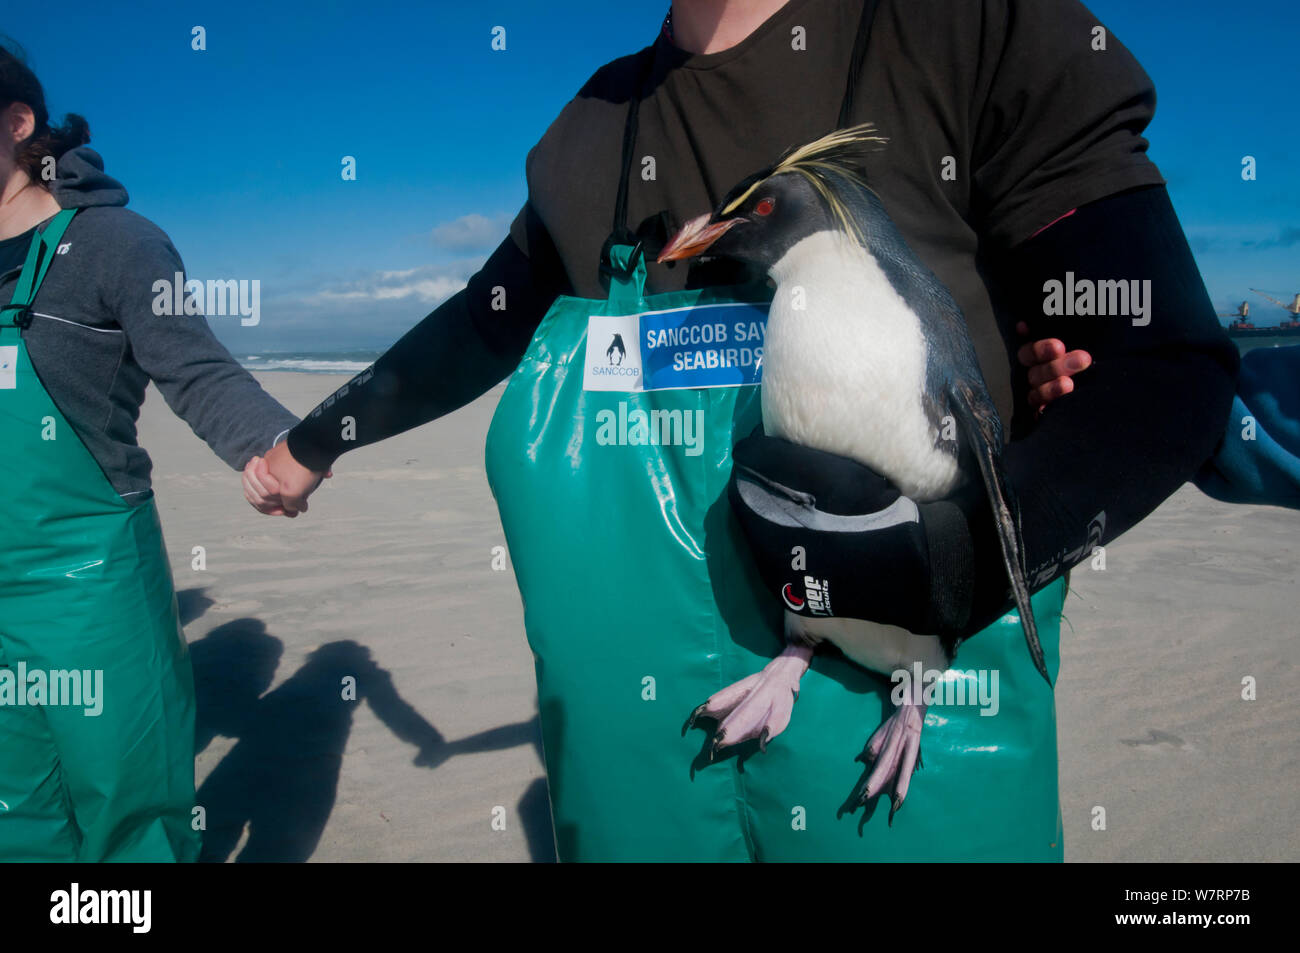 SANCCOB mani attraverso la sabbia evento per aumentare la consapevolezza per uccelli marini e la conservazione delle risorse marine, con azienda di volontariato "Rocky" il sud del pinguino saltaroccia (Eudyptes chrysocome) Table Bay, nei pressi di Città del Capo, Sud Africa. Giugno 2010 Foto Stock